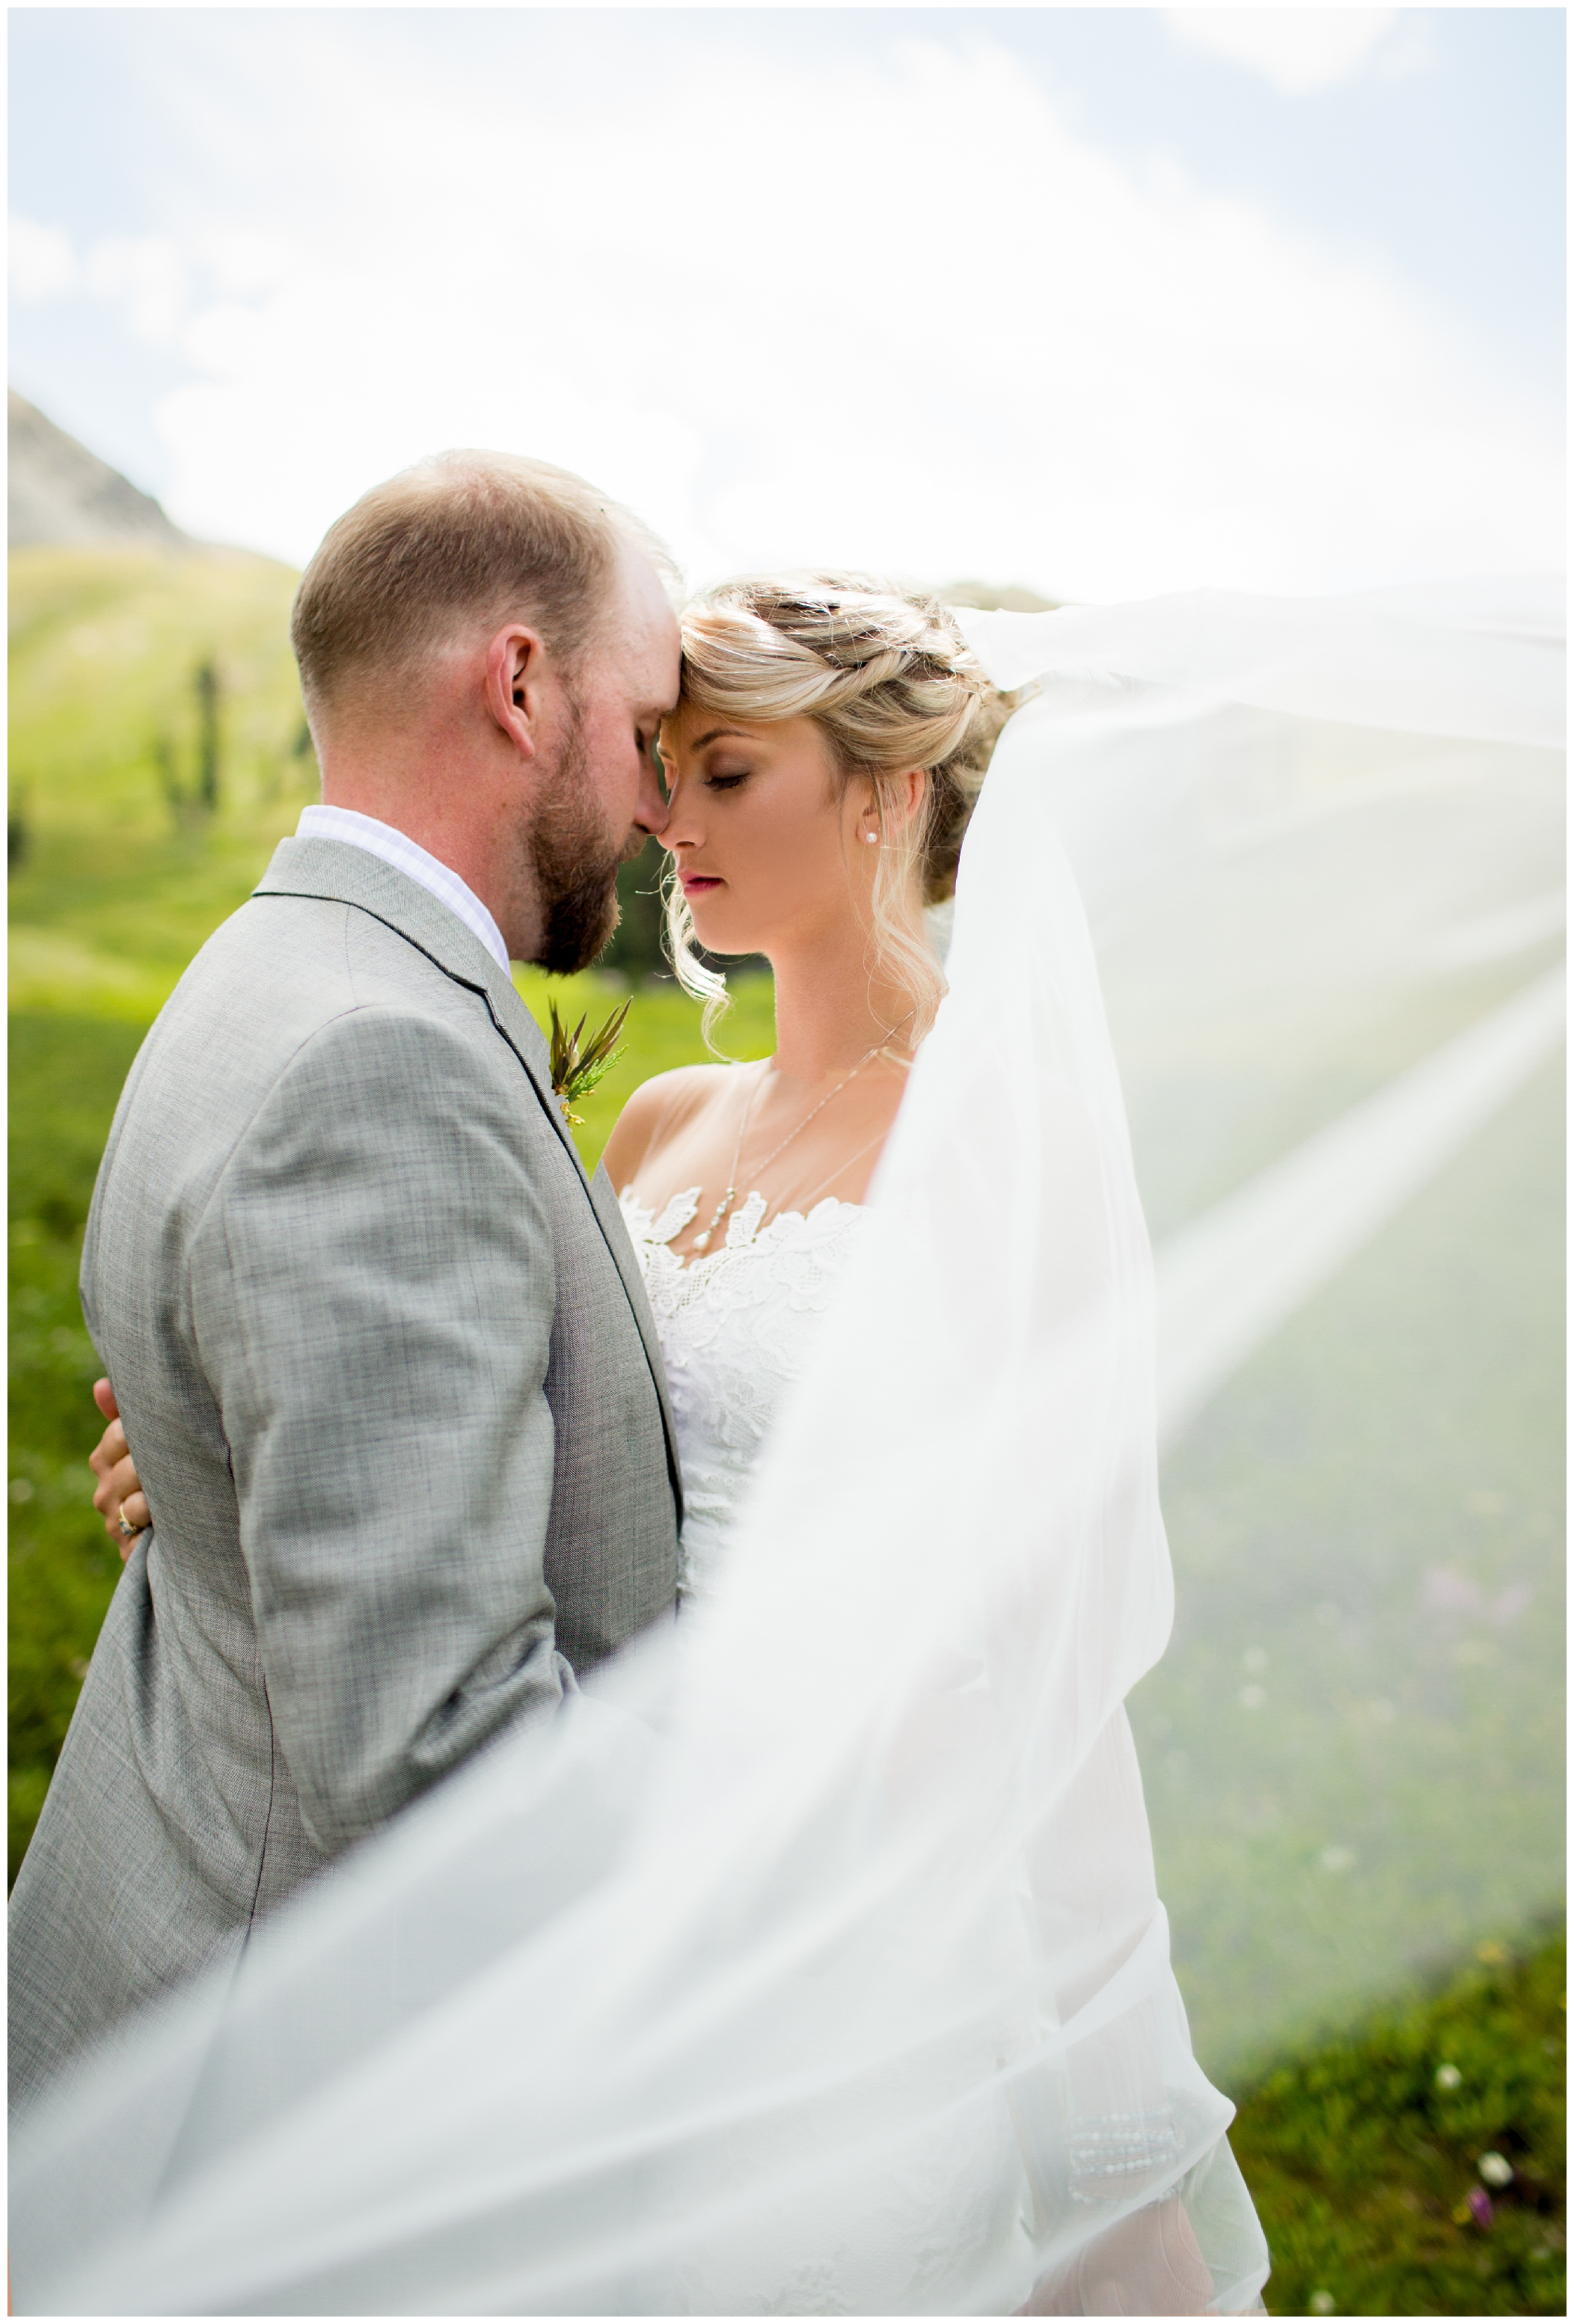 A Basin wedding photos by Colorado mountain wedding photographer Plum Pretty Photography